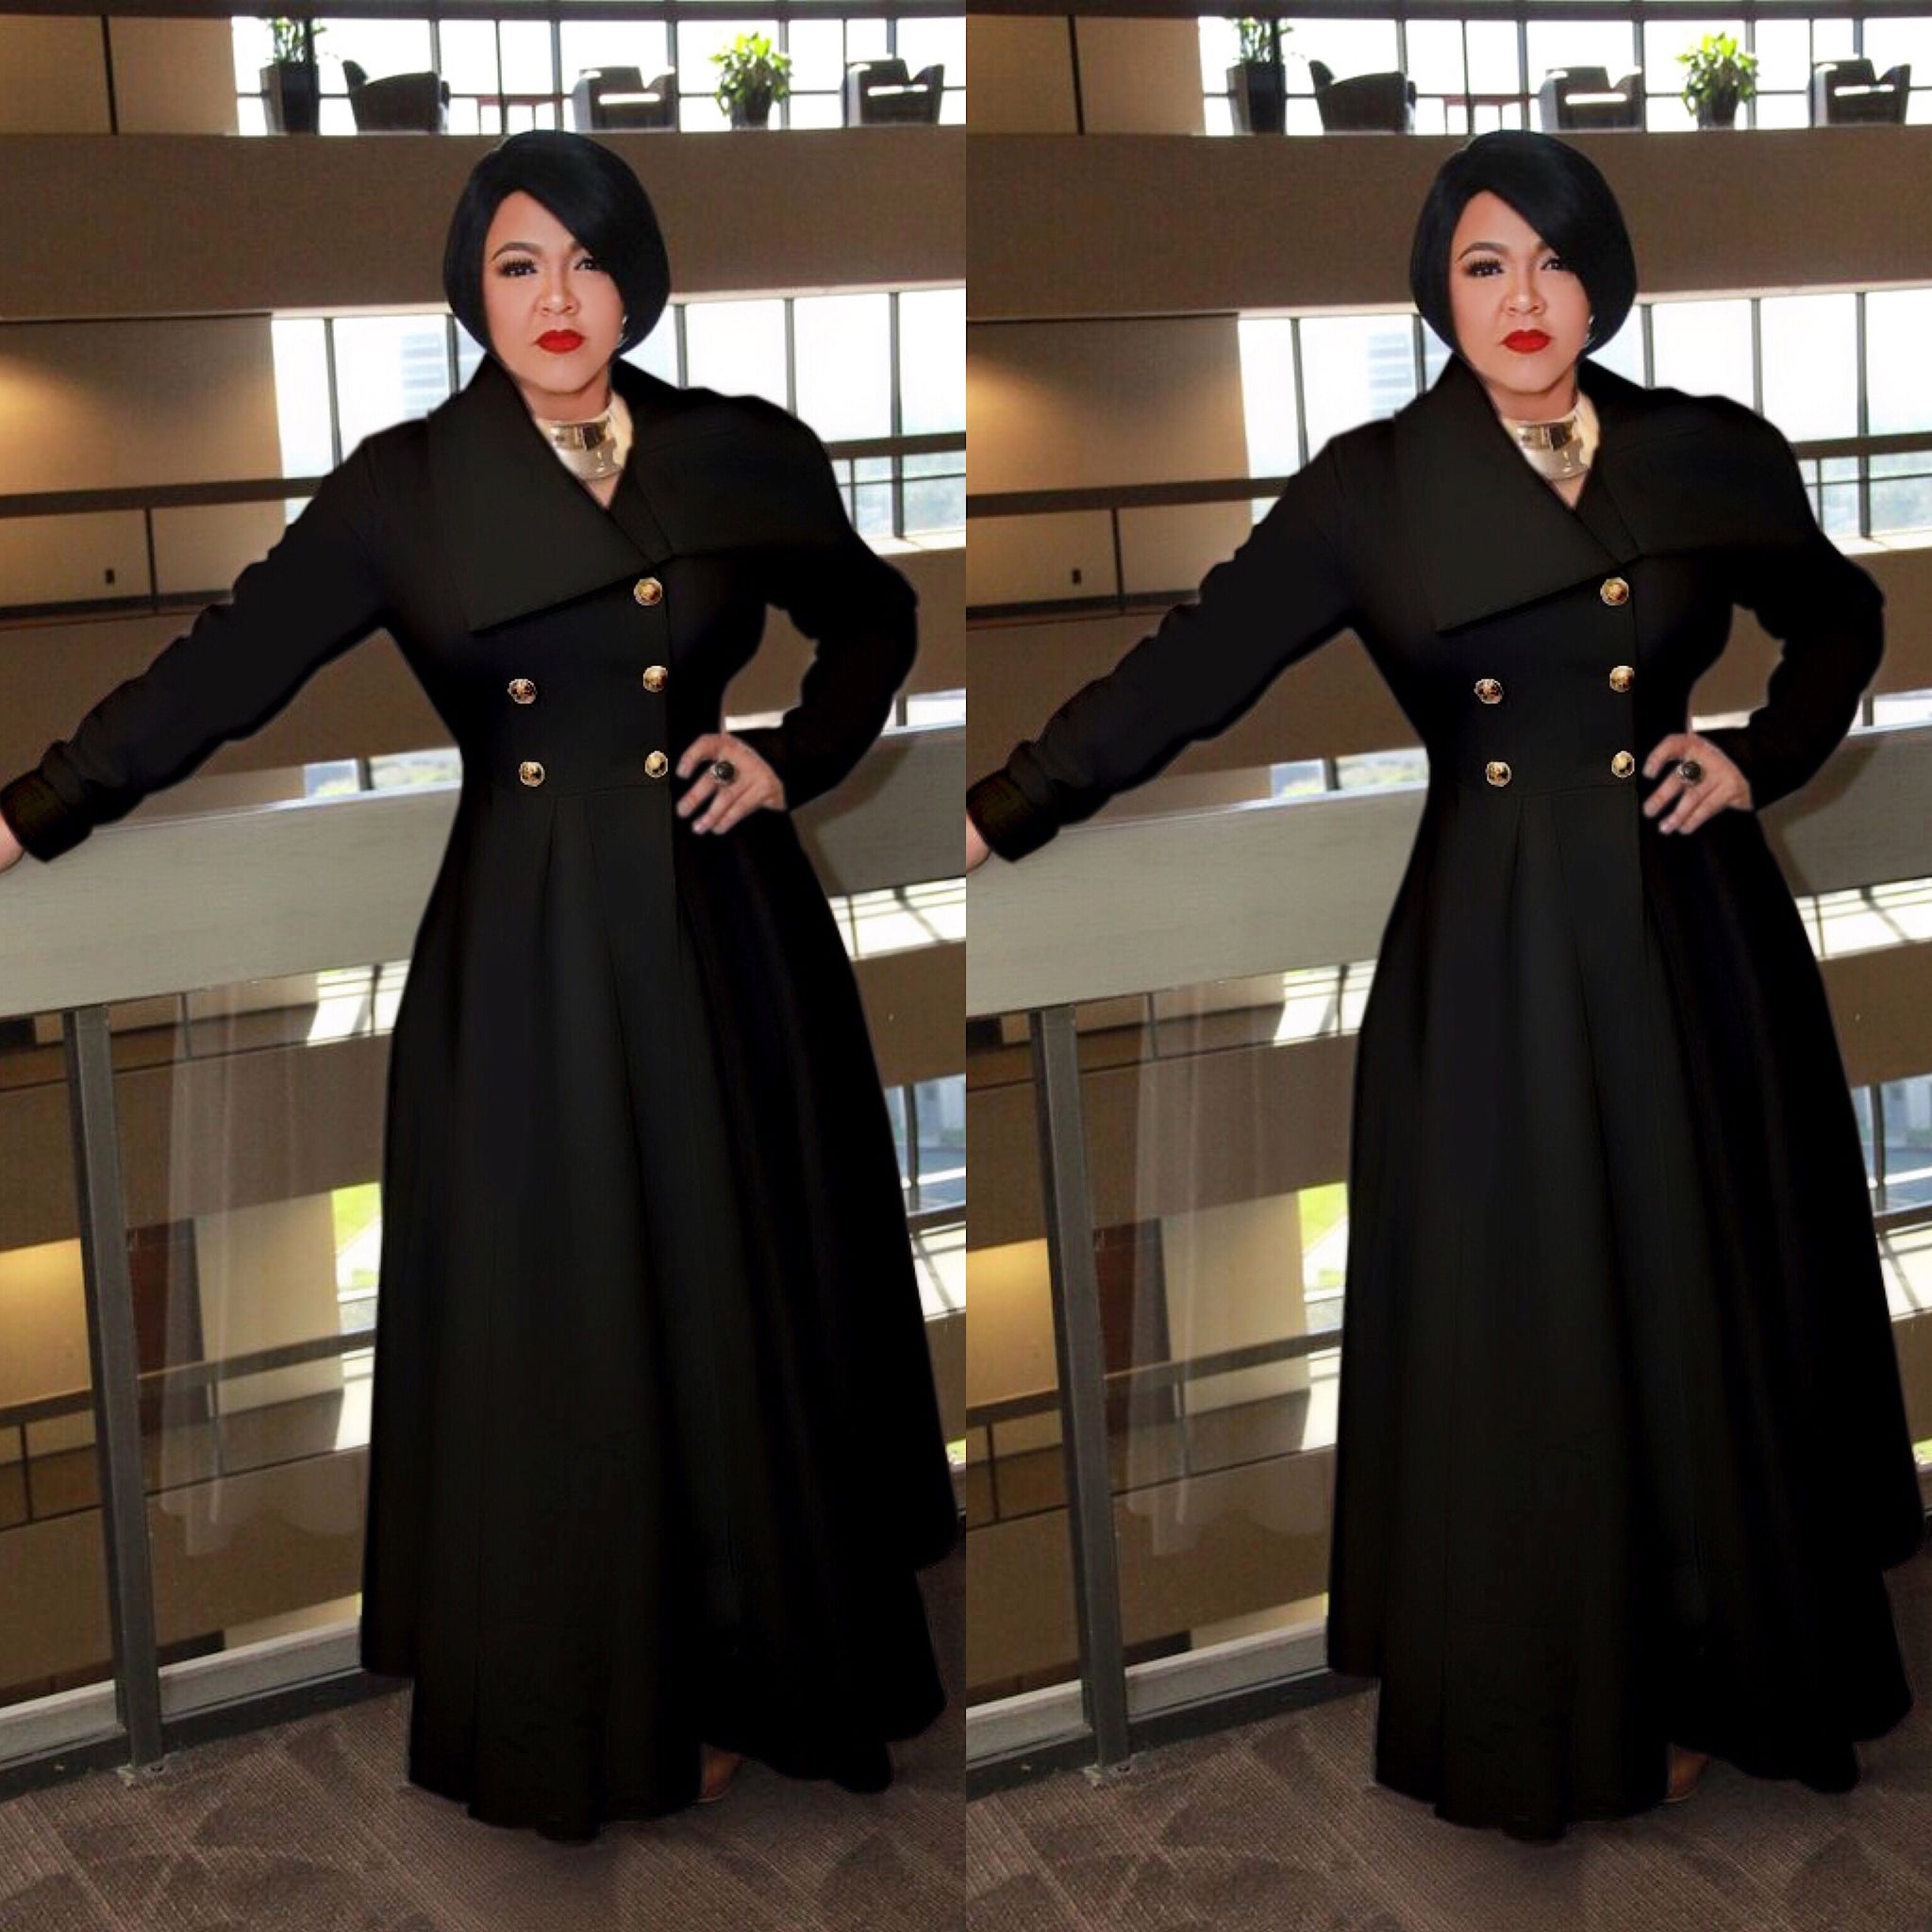 Black Long Duster Coat Dress - socialbutterflycollection-com (3827189186621) (6330890813614)